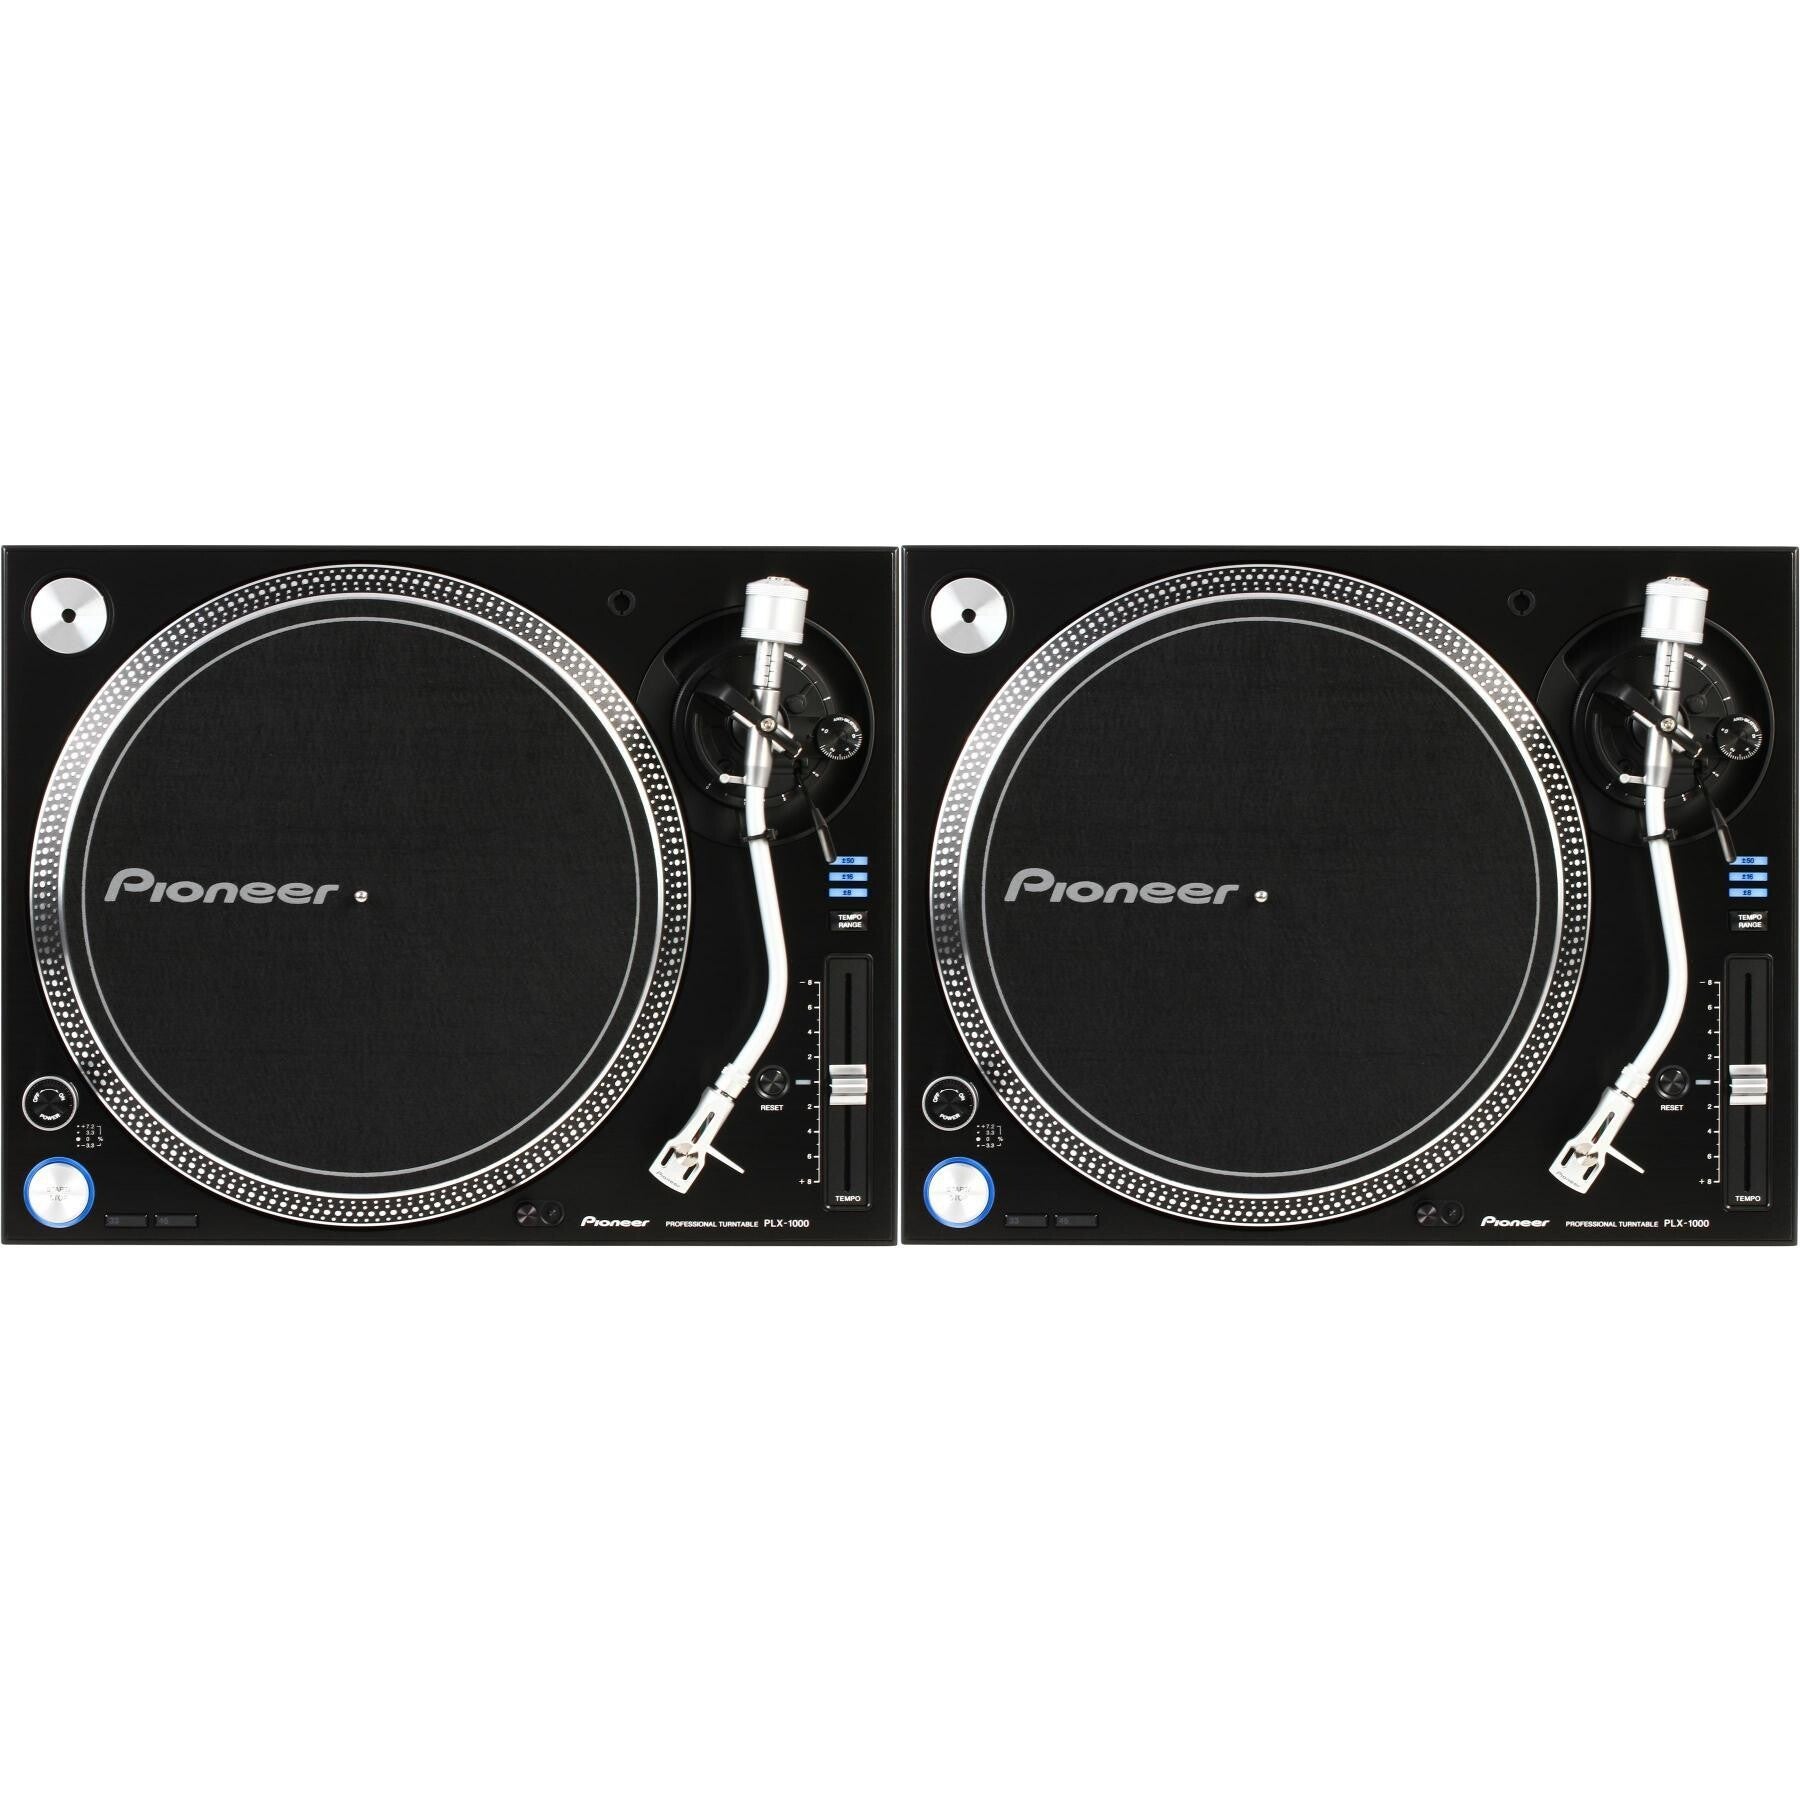 Pioneer DJ PLX-1000 Professional Turntable - Pair